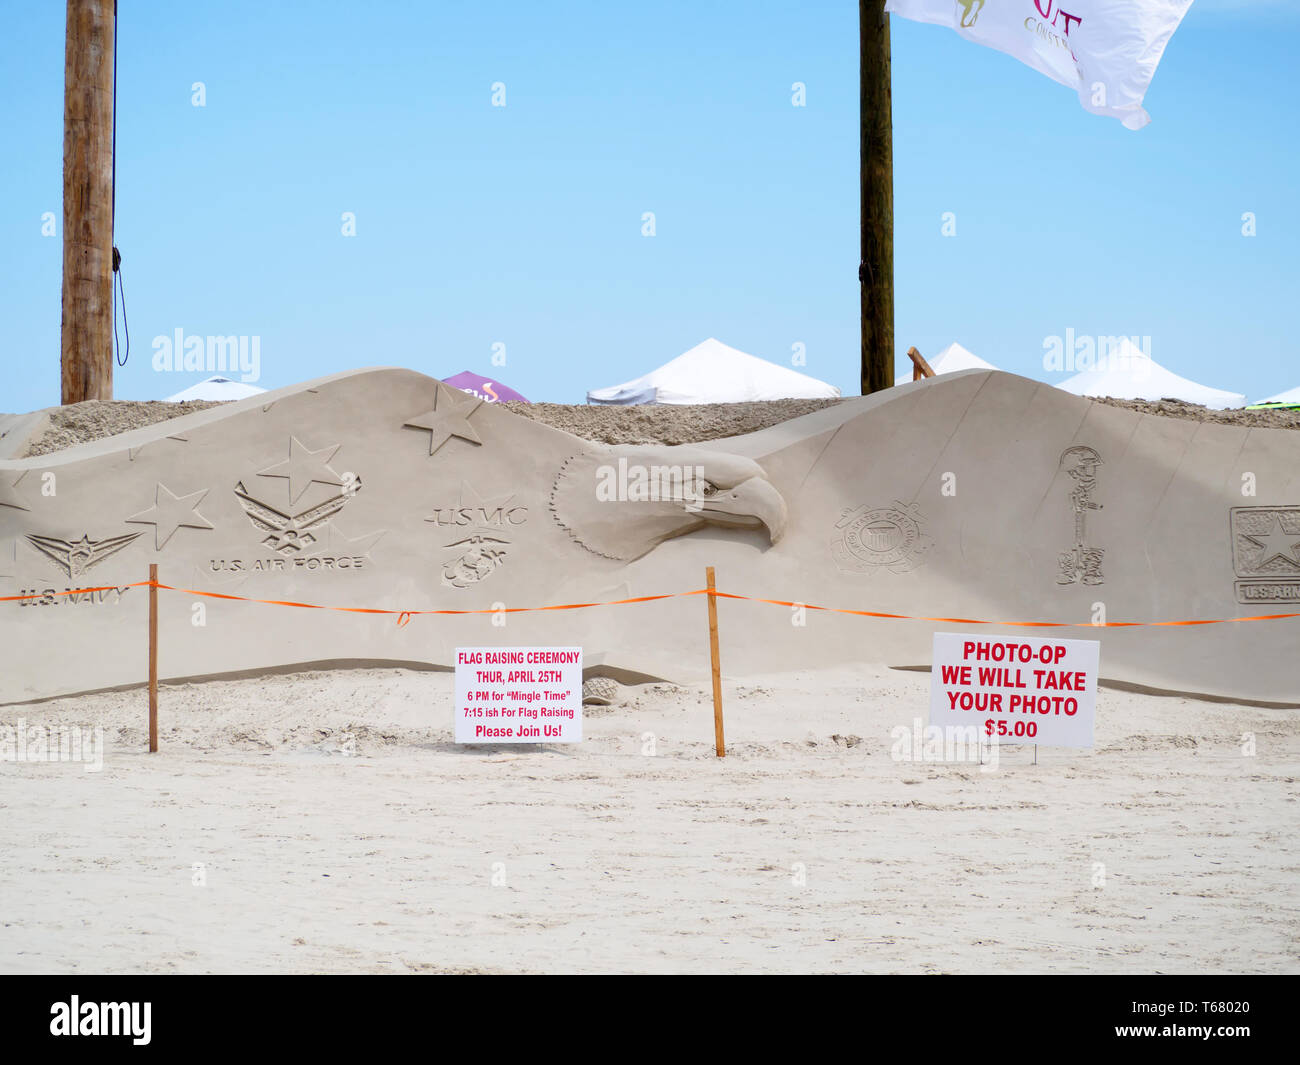 Forces armées des États-Unis sont en vedette sur un énorme aigle sculpté dans le sable à la Texas 2019 Sandfest à Port Aransas, Texas USA. Banque D'Images